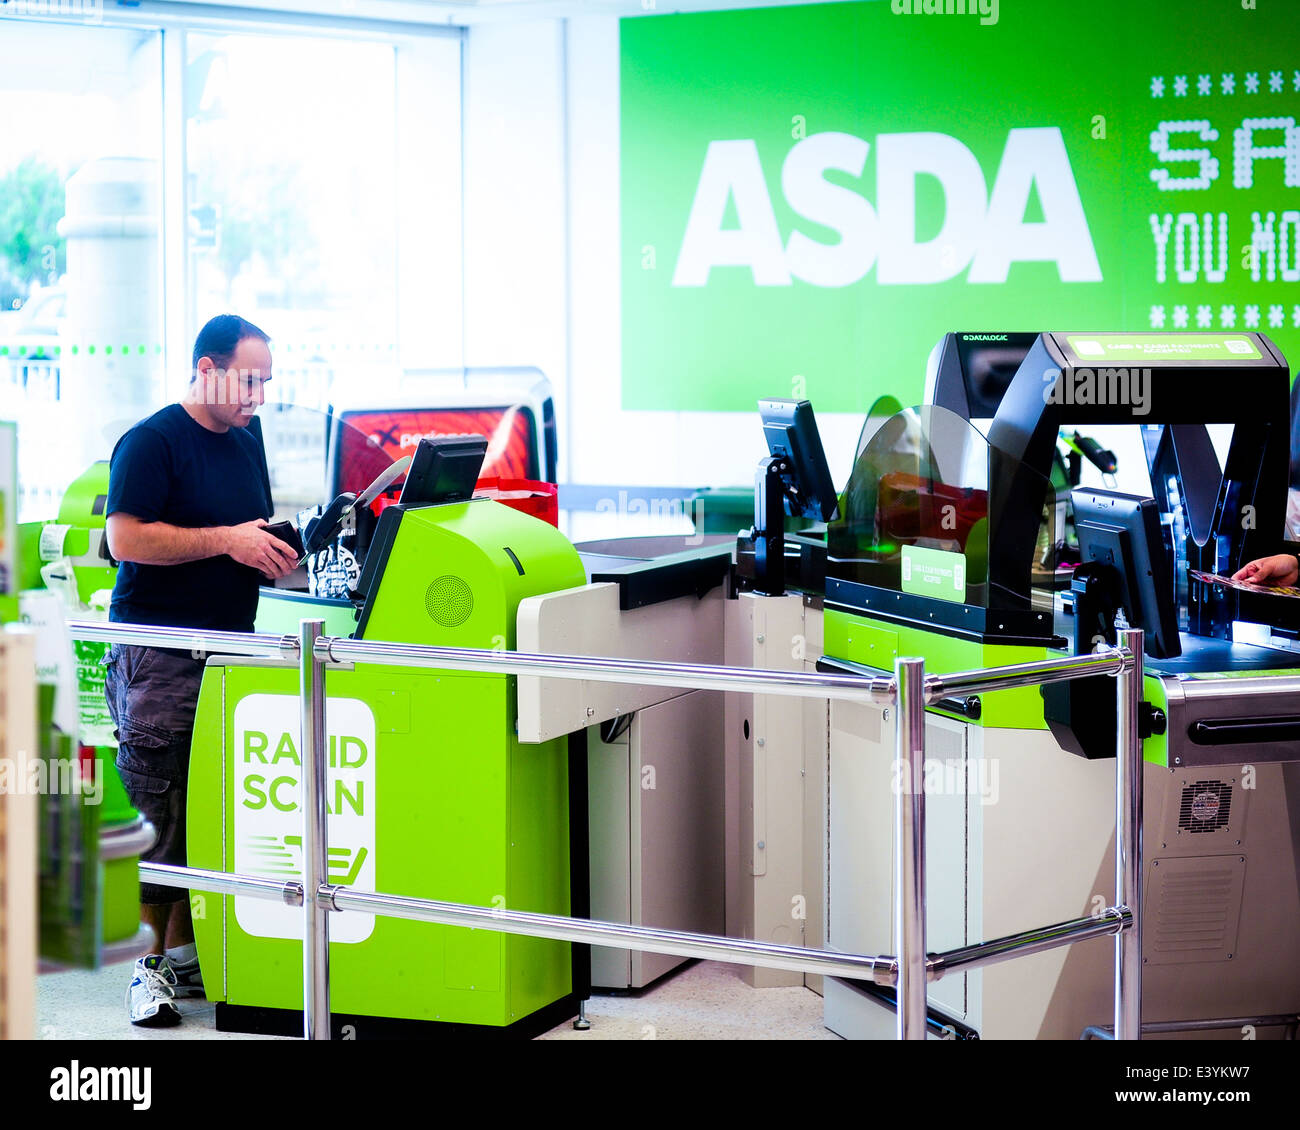 customer at a self checkout machine at asda Stock Photo